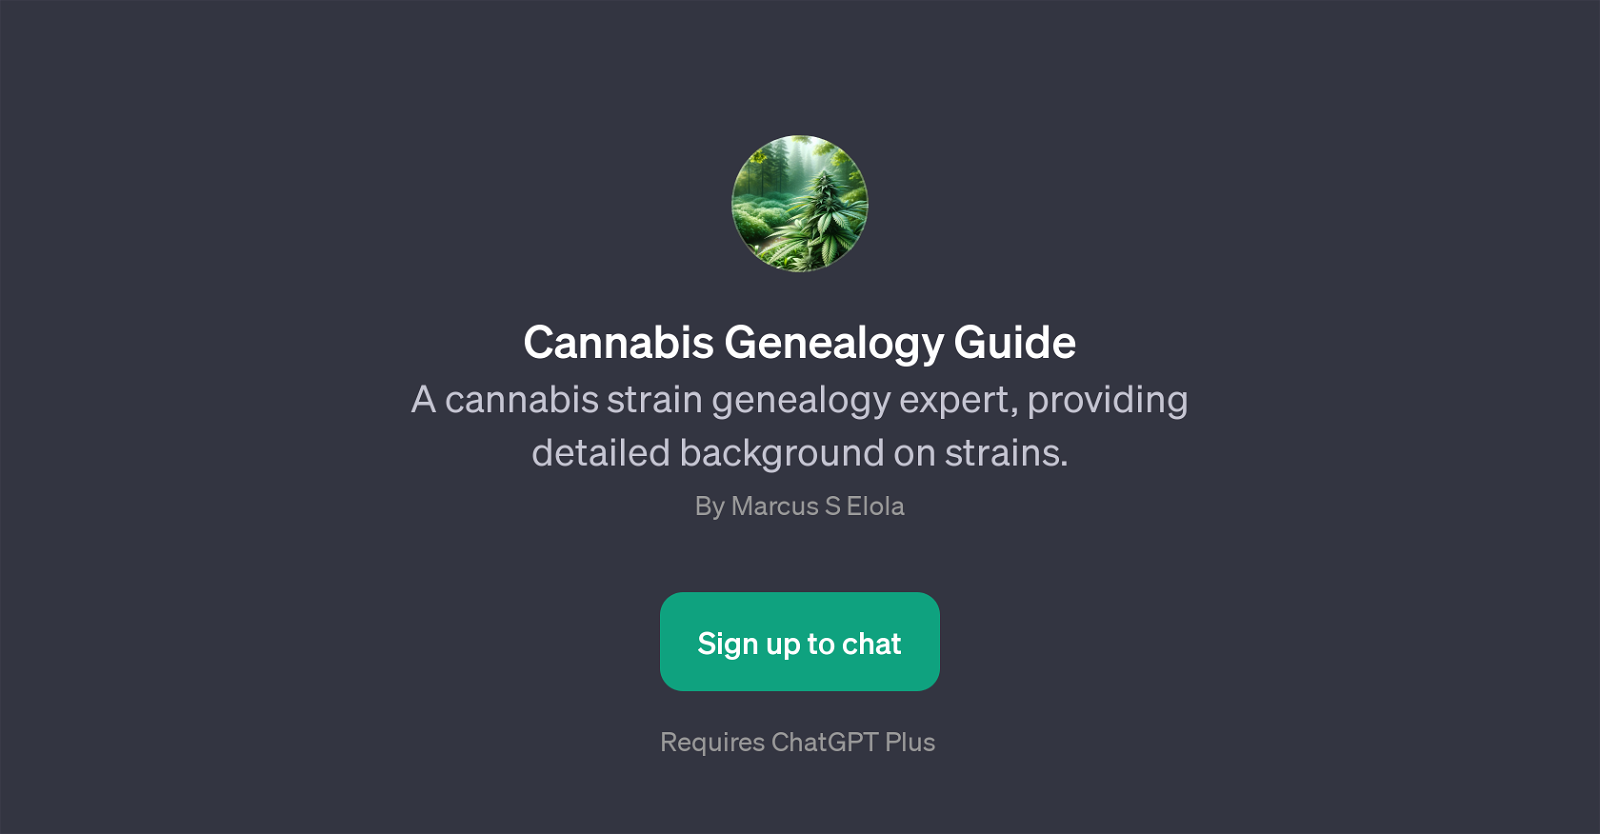 Cannabis Genealogy Guide website